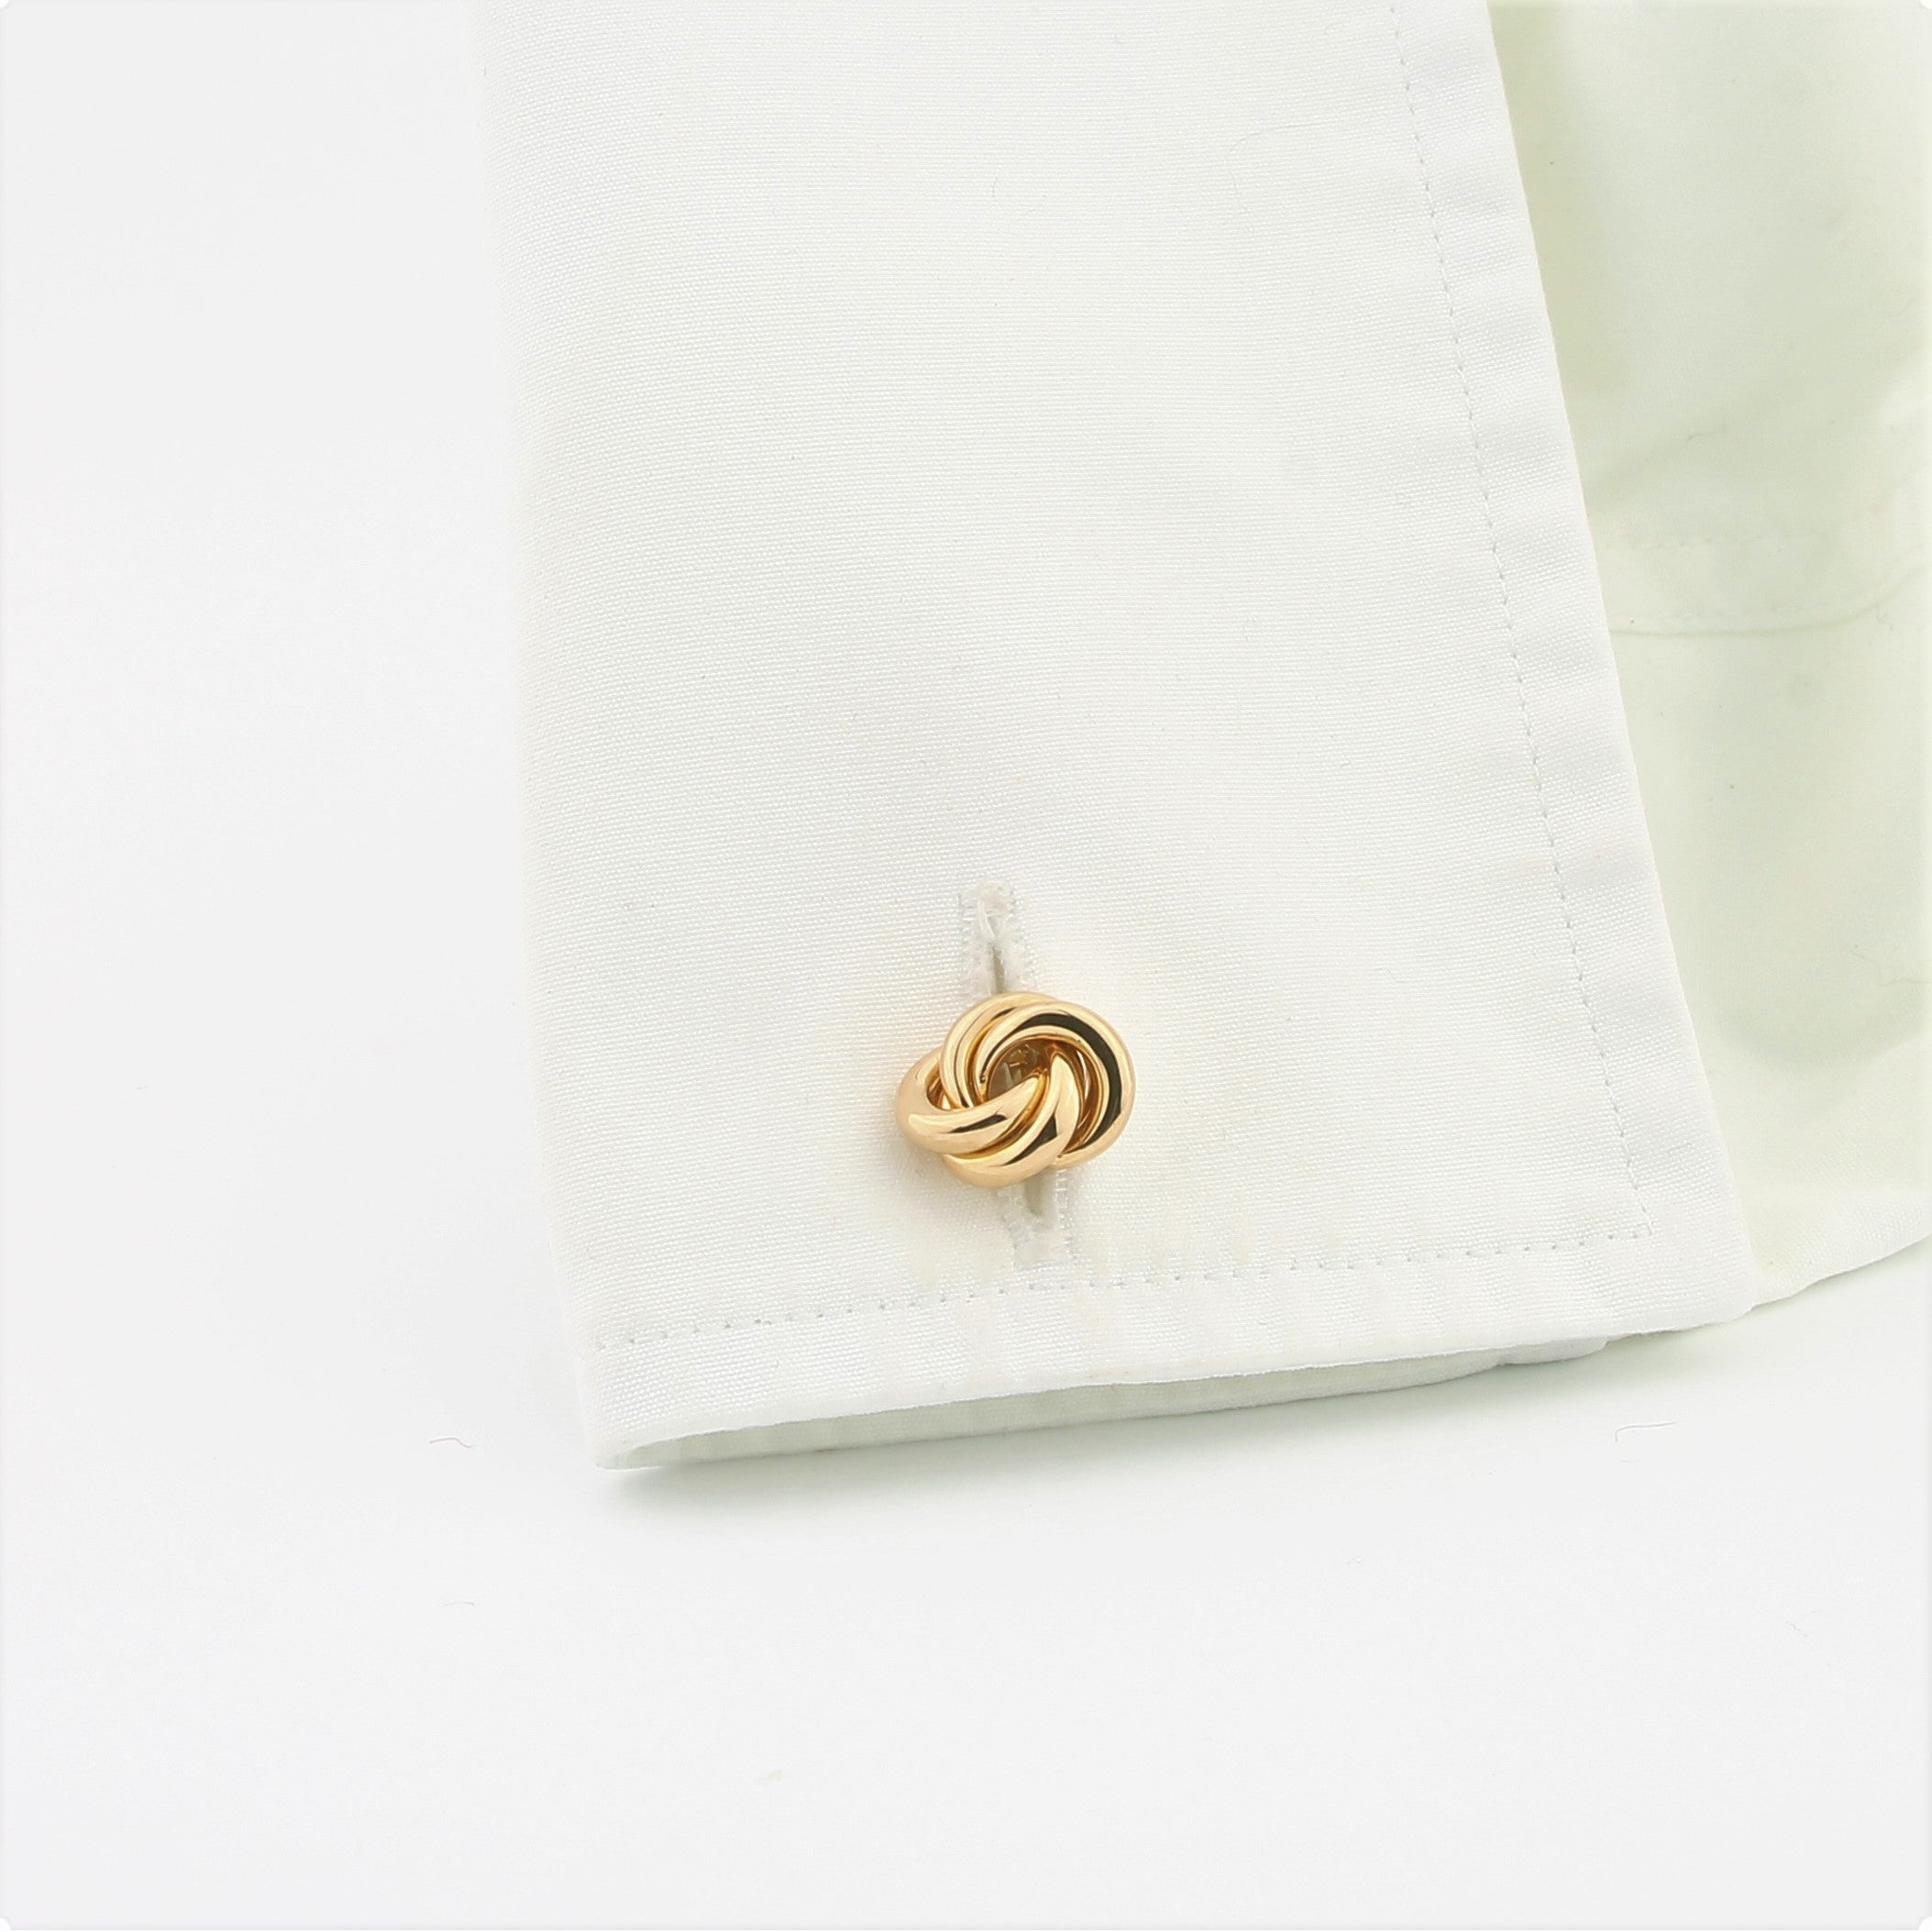 Classic knot cufflinks in 18k rose gold in a cuff